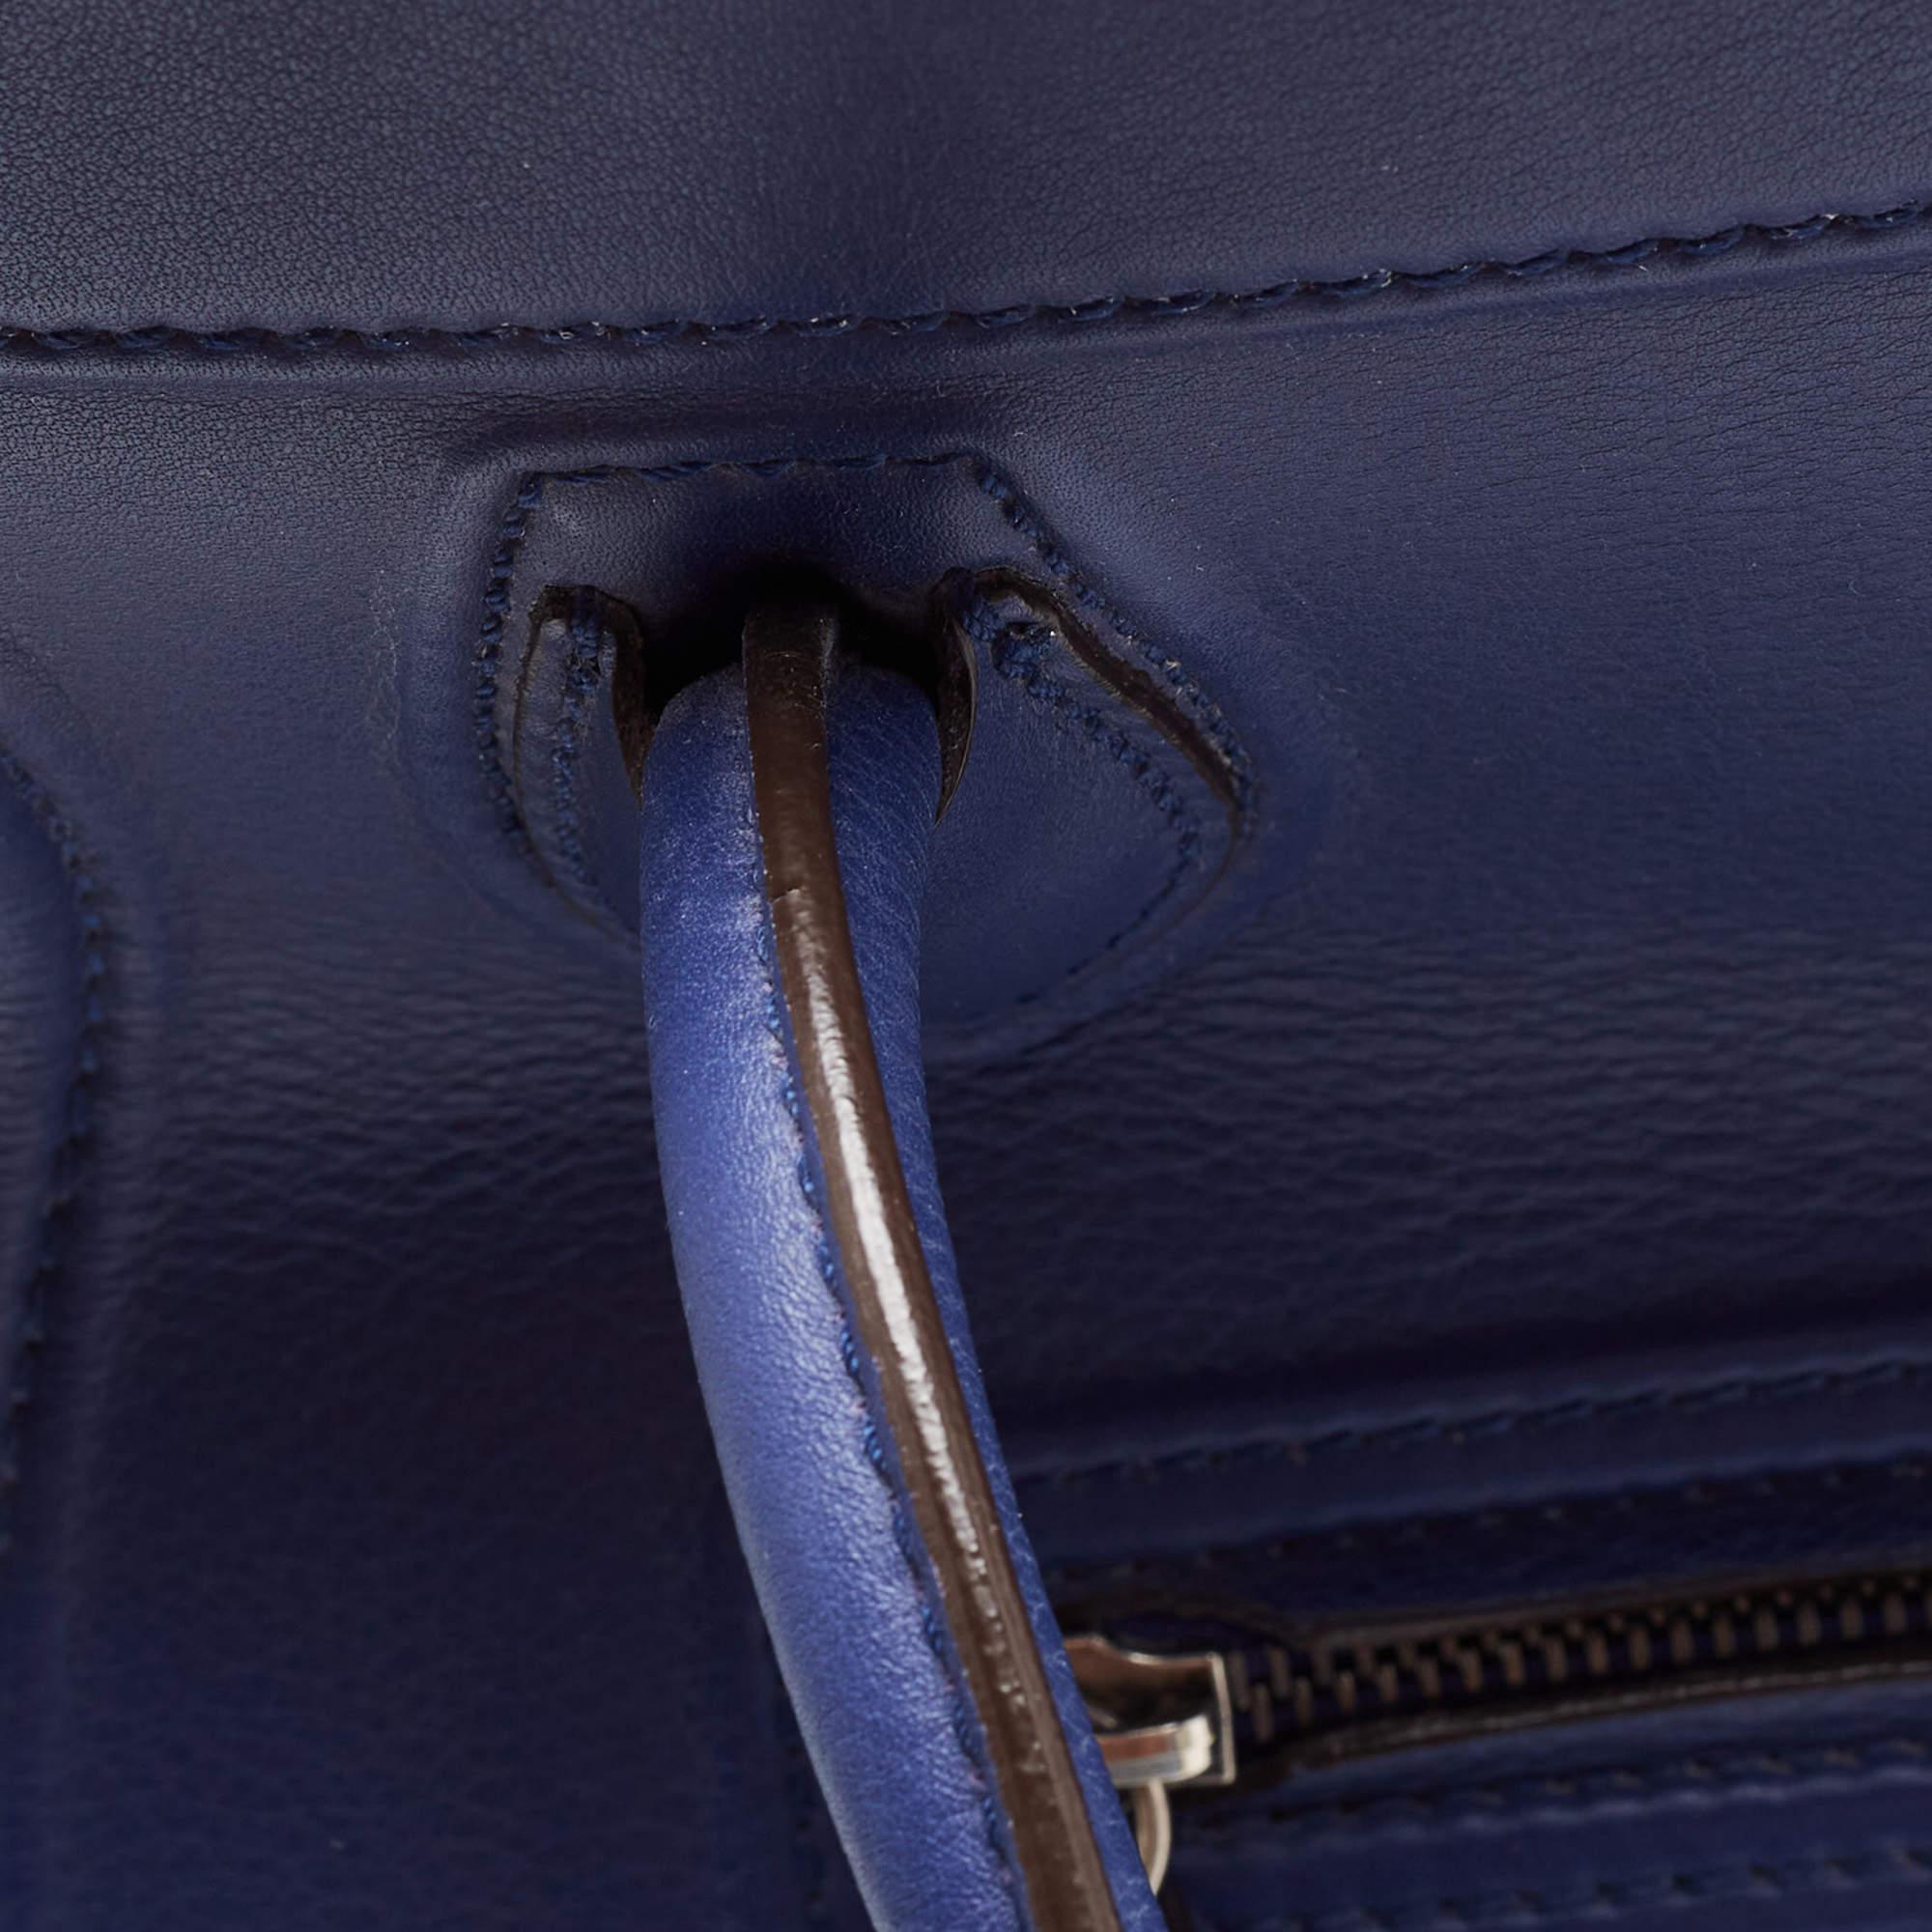 Celine Blue Leather Medium Phantom Luggage Tote 2